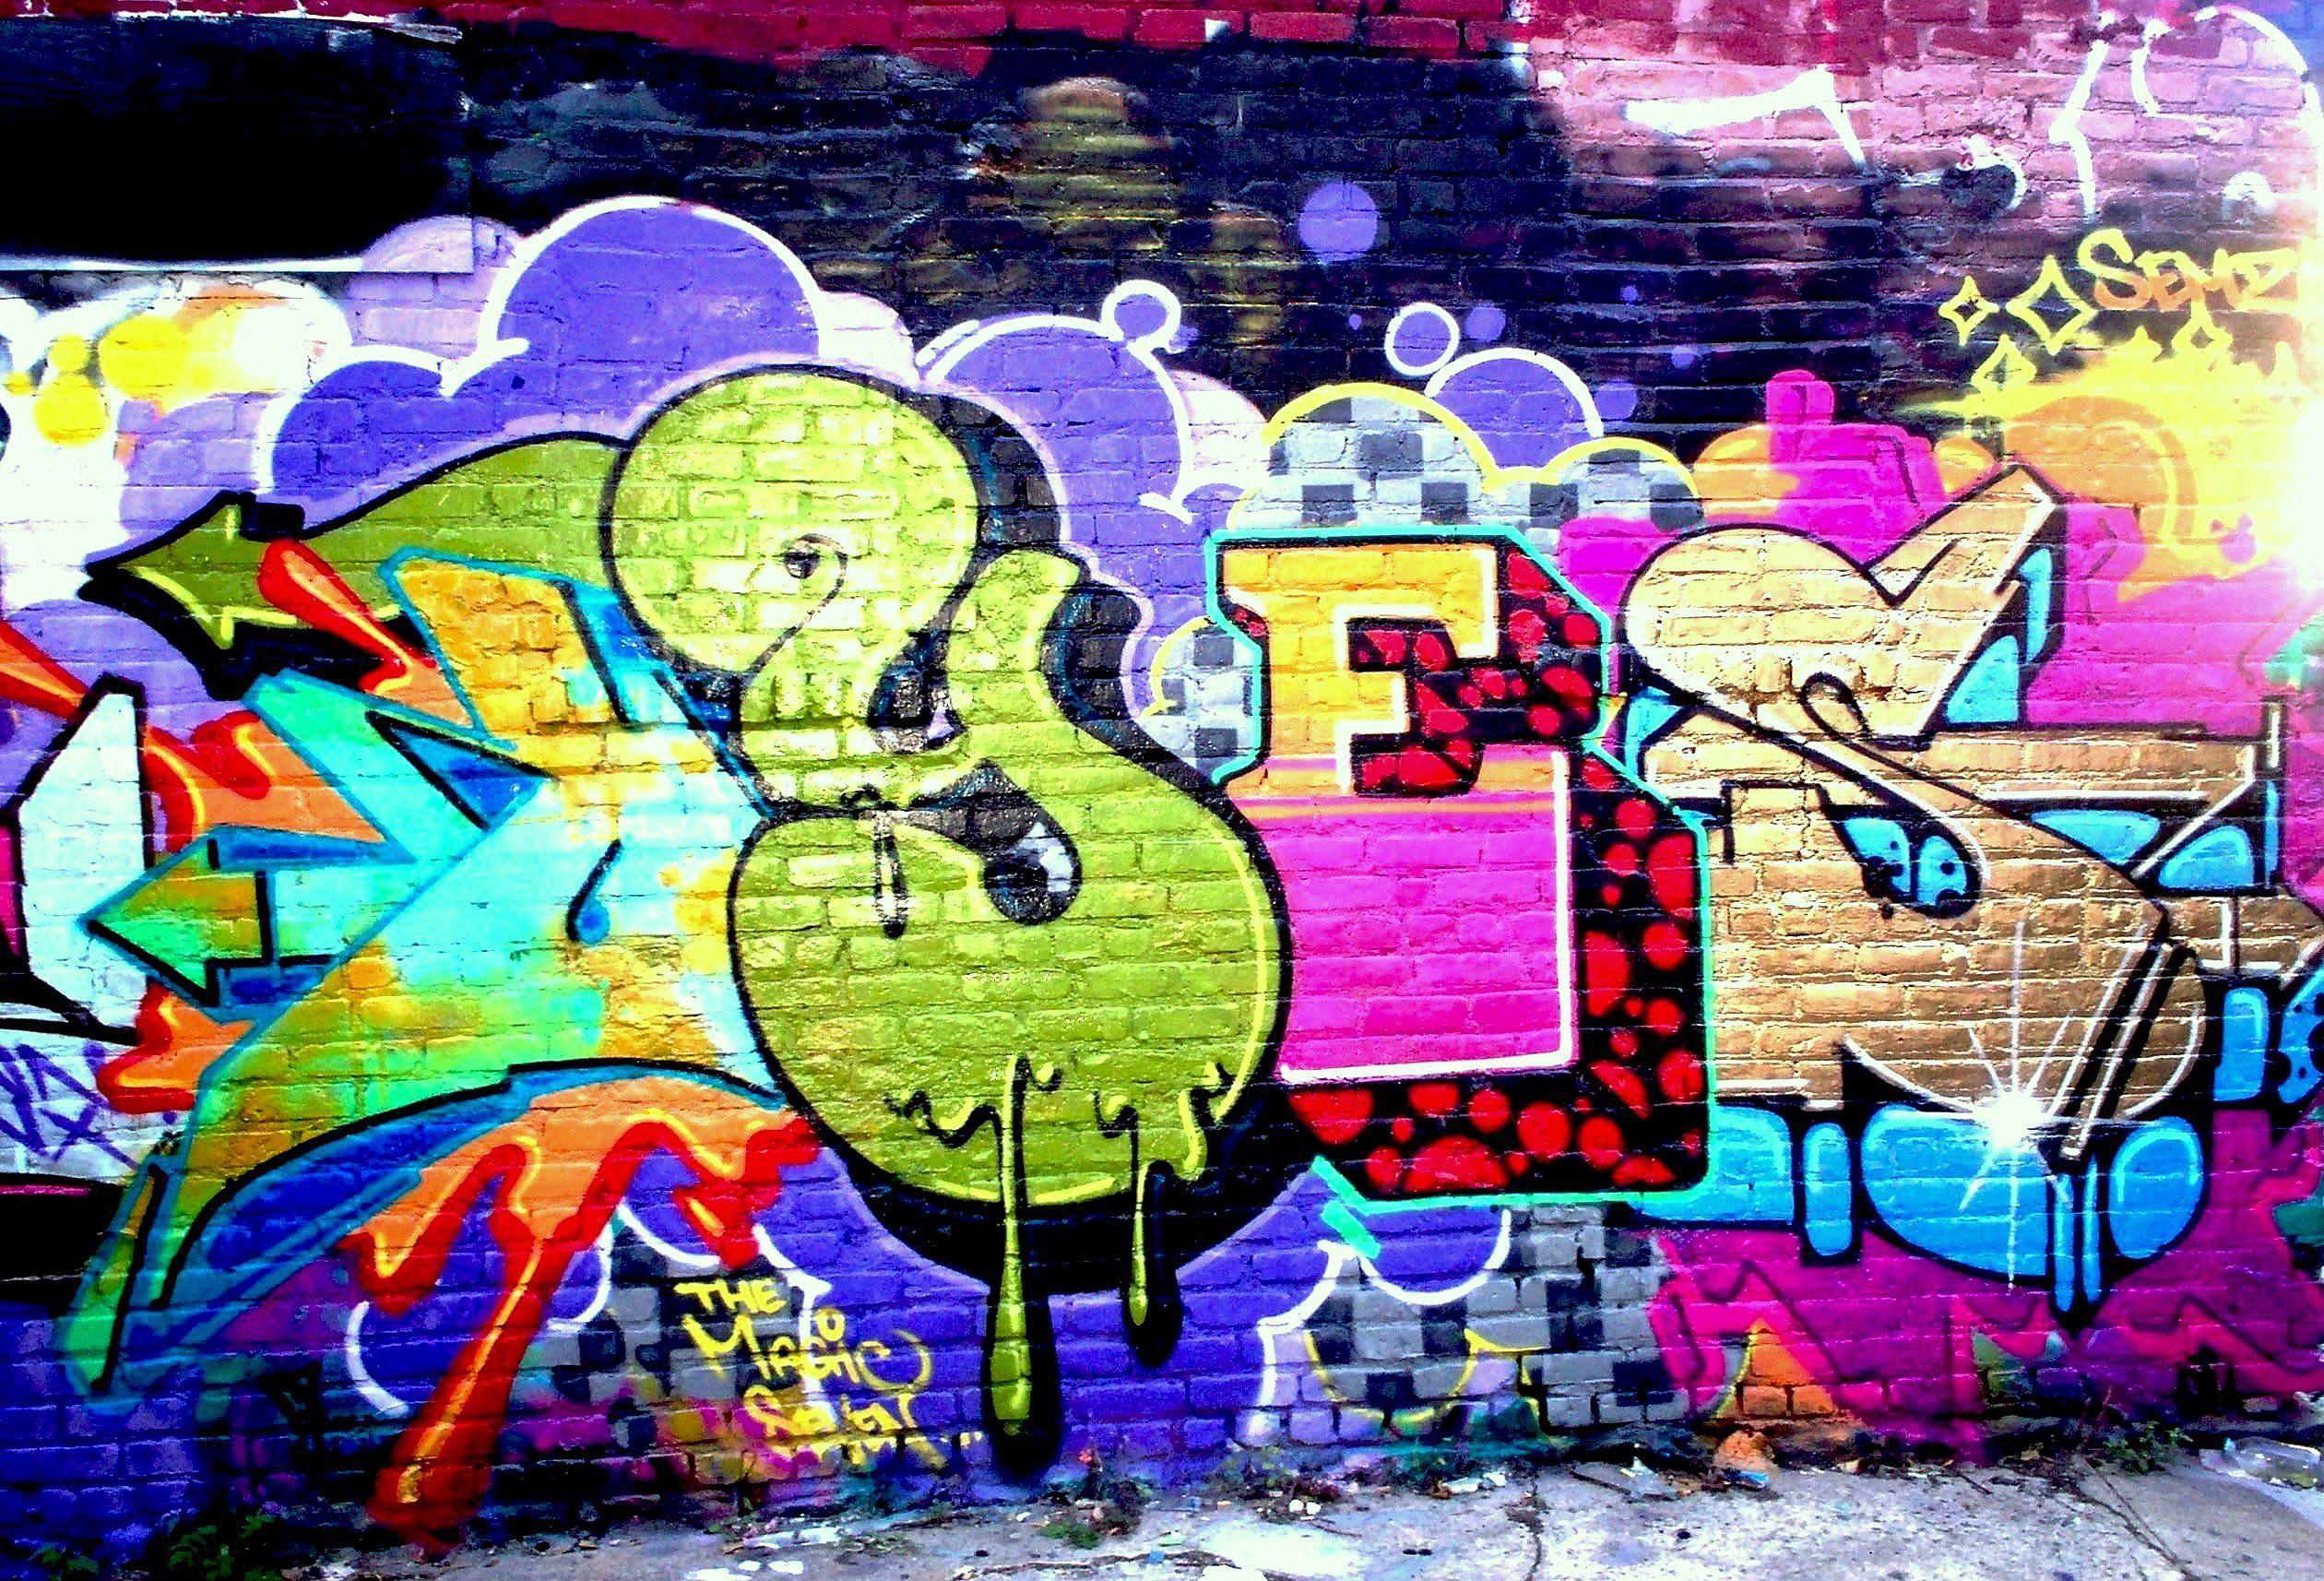 Amazing Graffiti Wallpaper Amazing Graffiti Wallpaper Awesome